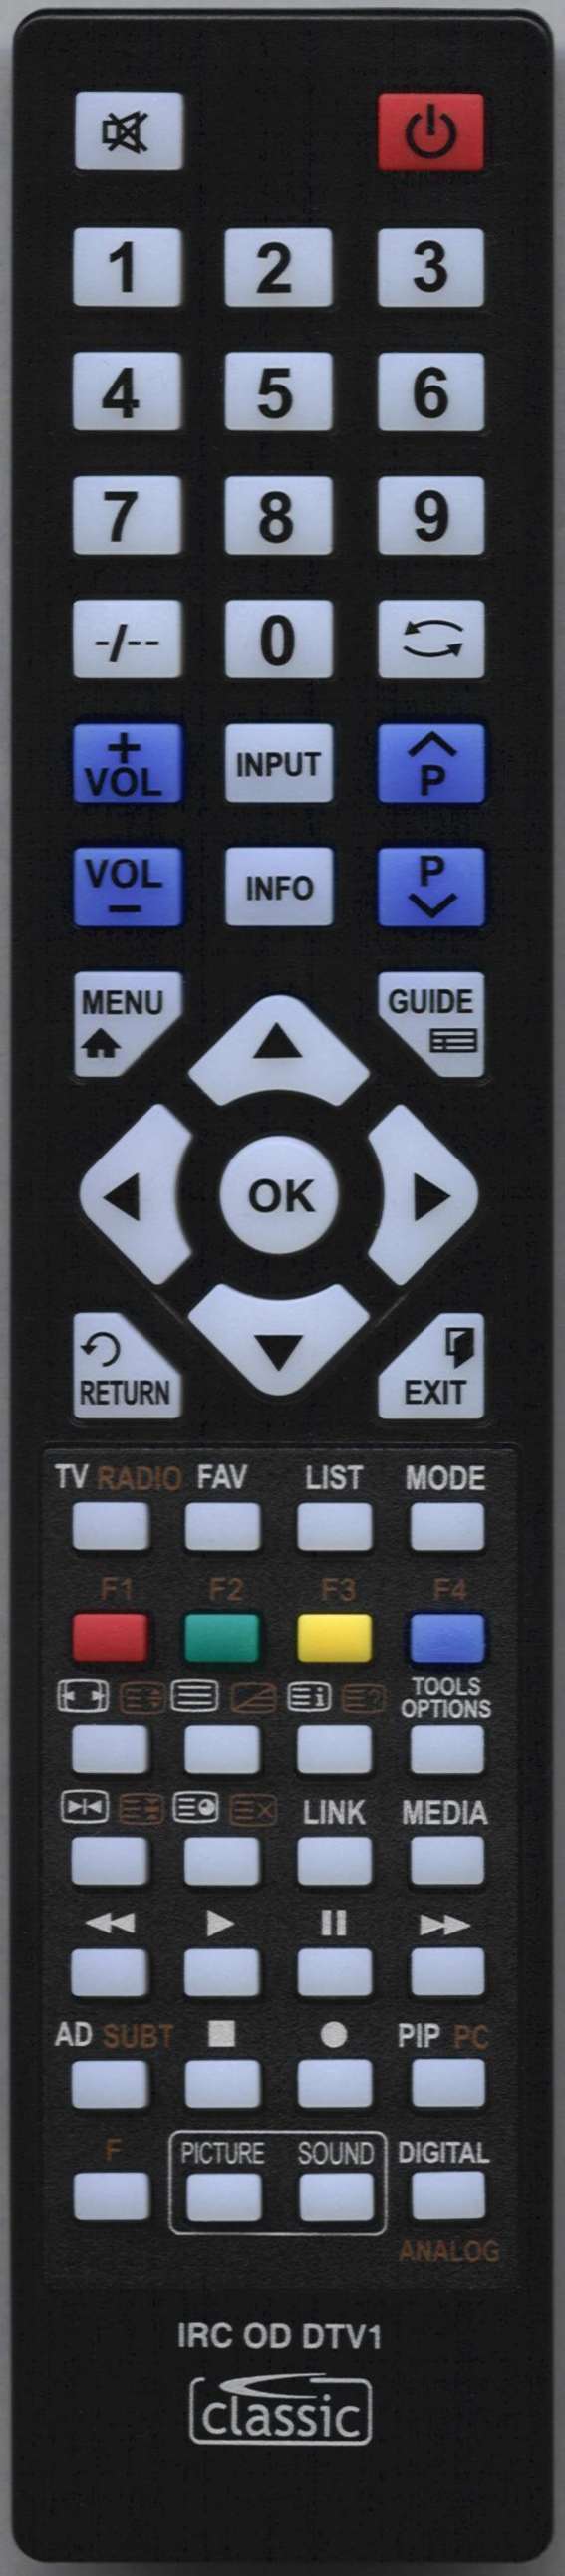 LUXOR 10106147 Remote Control Alternative